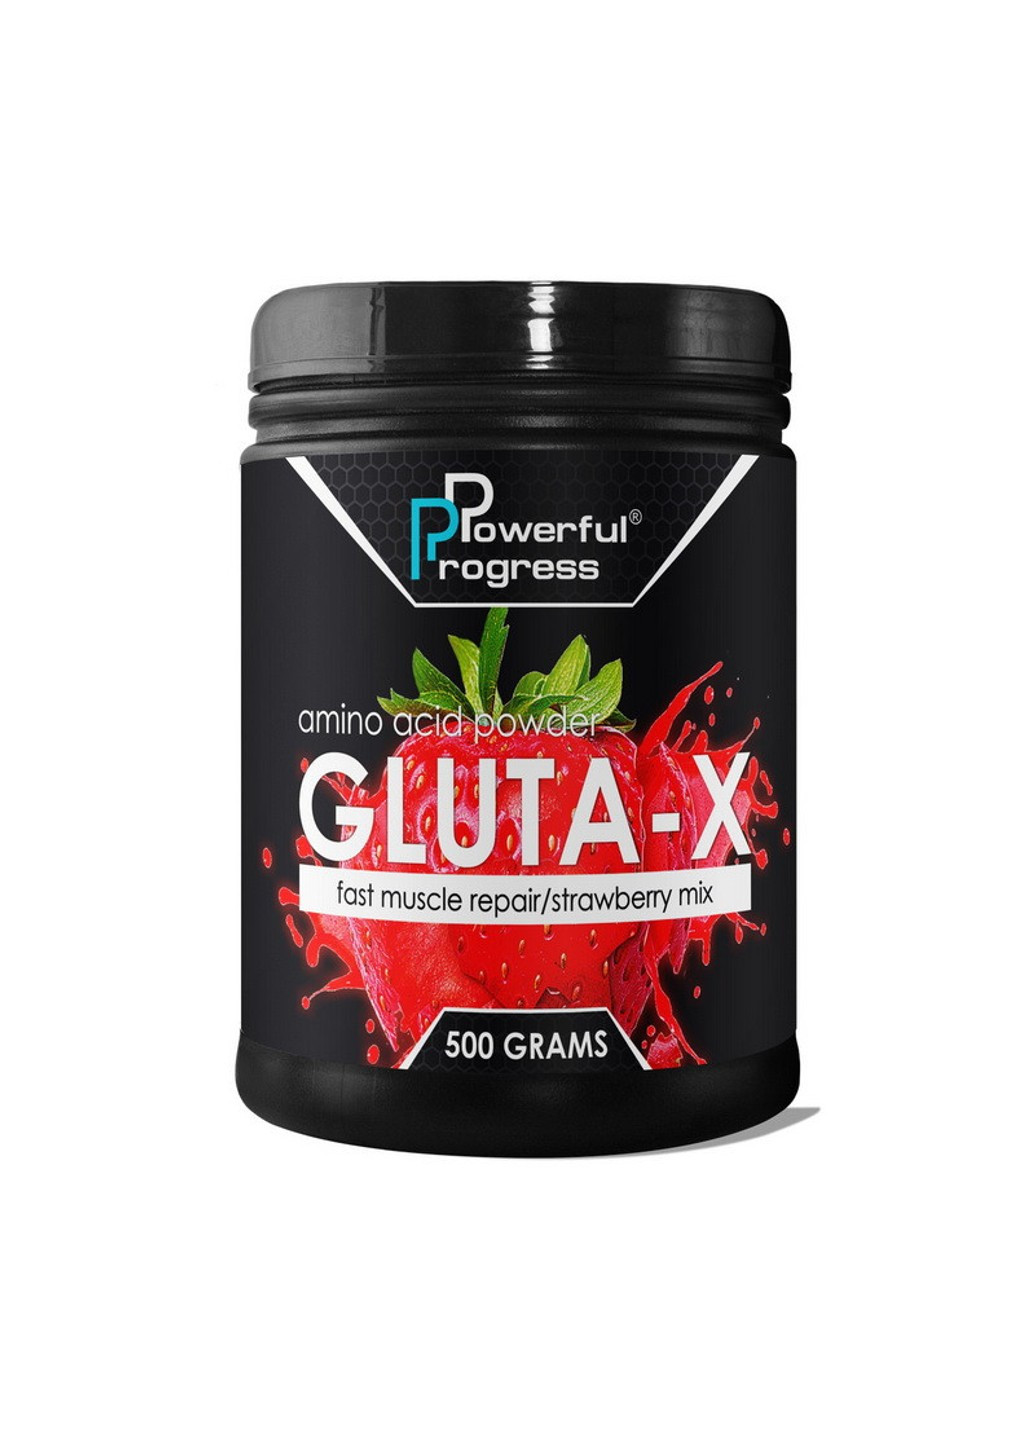 Глютамін Gluta-X (500 г) поверфул прогрес strawberry Powerful Progress (255362845)